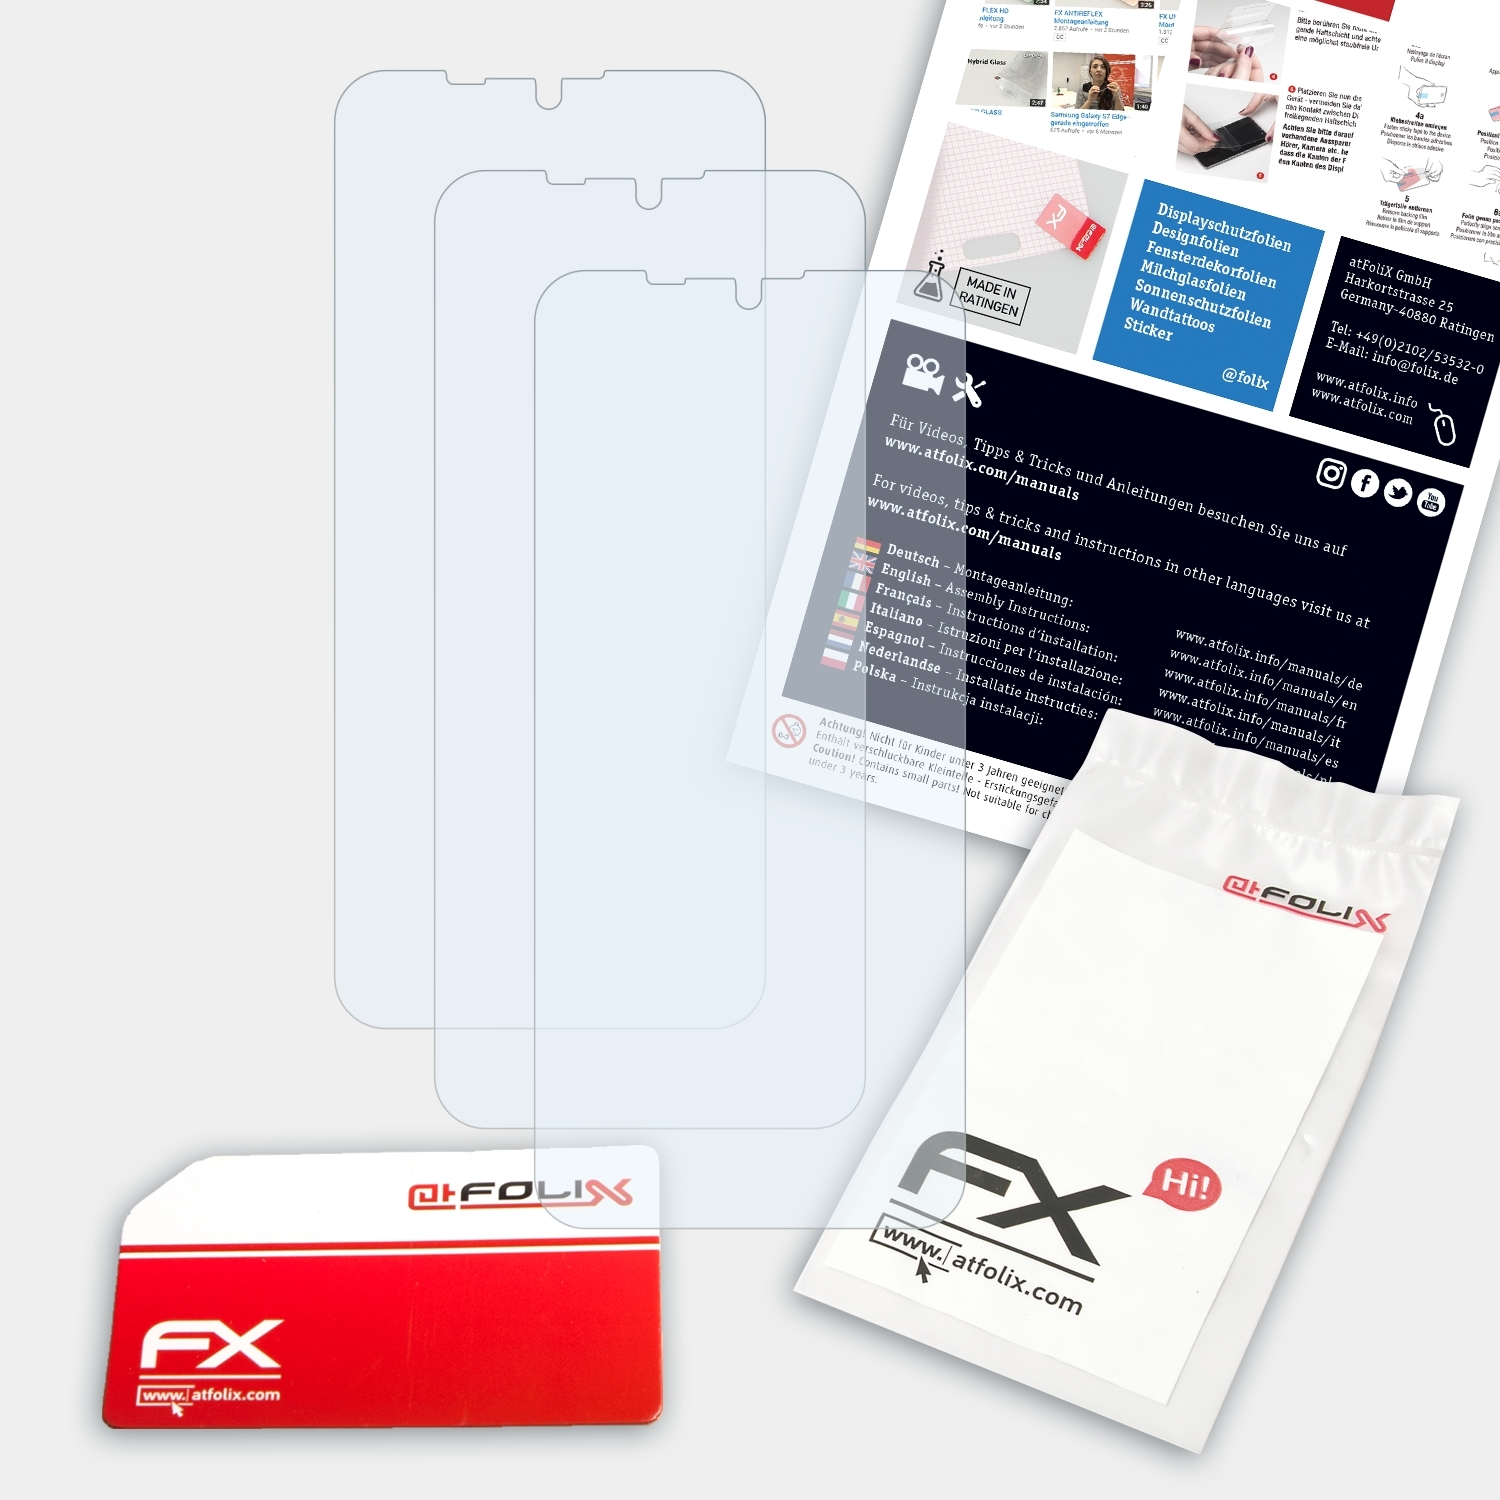 ATFOLIX 3x K12) FX-Clear Oukitel Displayschutz(für